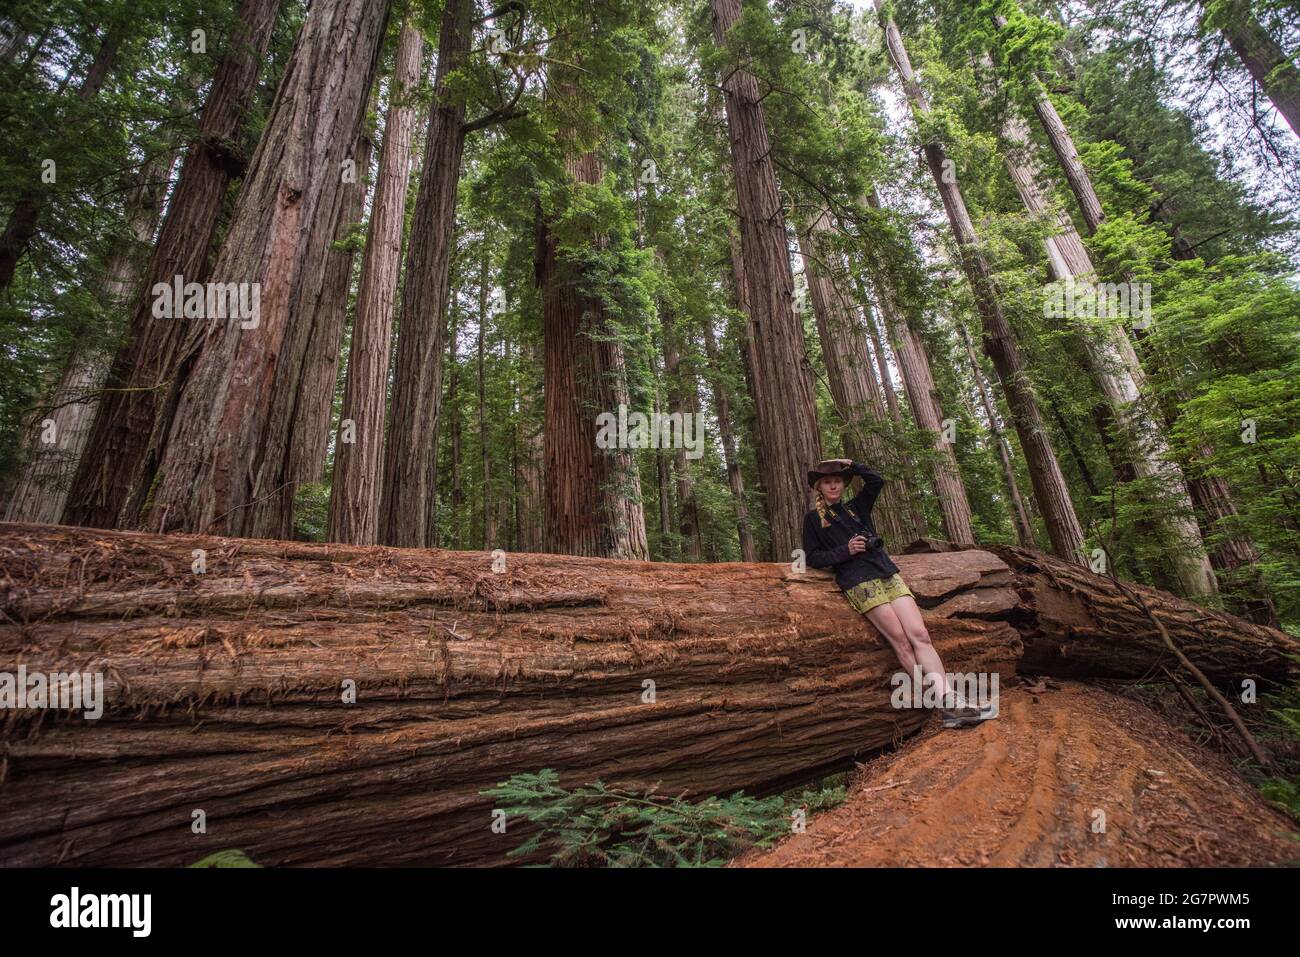 Une randonneur femelle se penchait contre un tronc d'arbre de séquoias (Sequoia sempervirens) dans le parc régional de séquoias Jedediah smith, en Californie du Nord, aux États-Unis. Banque D'Images